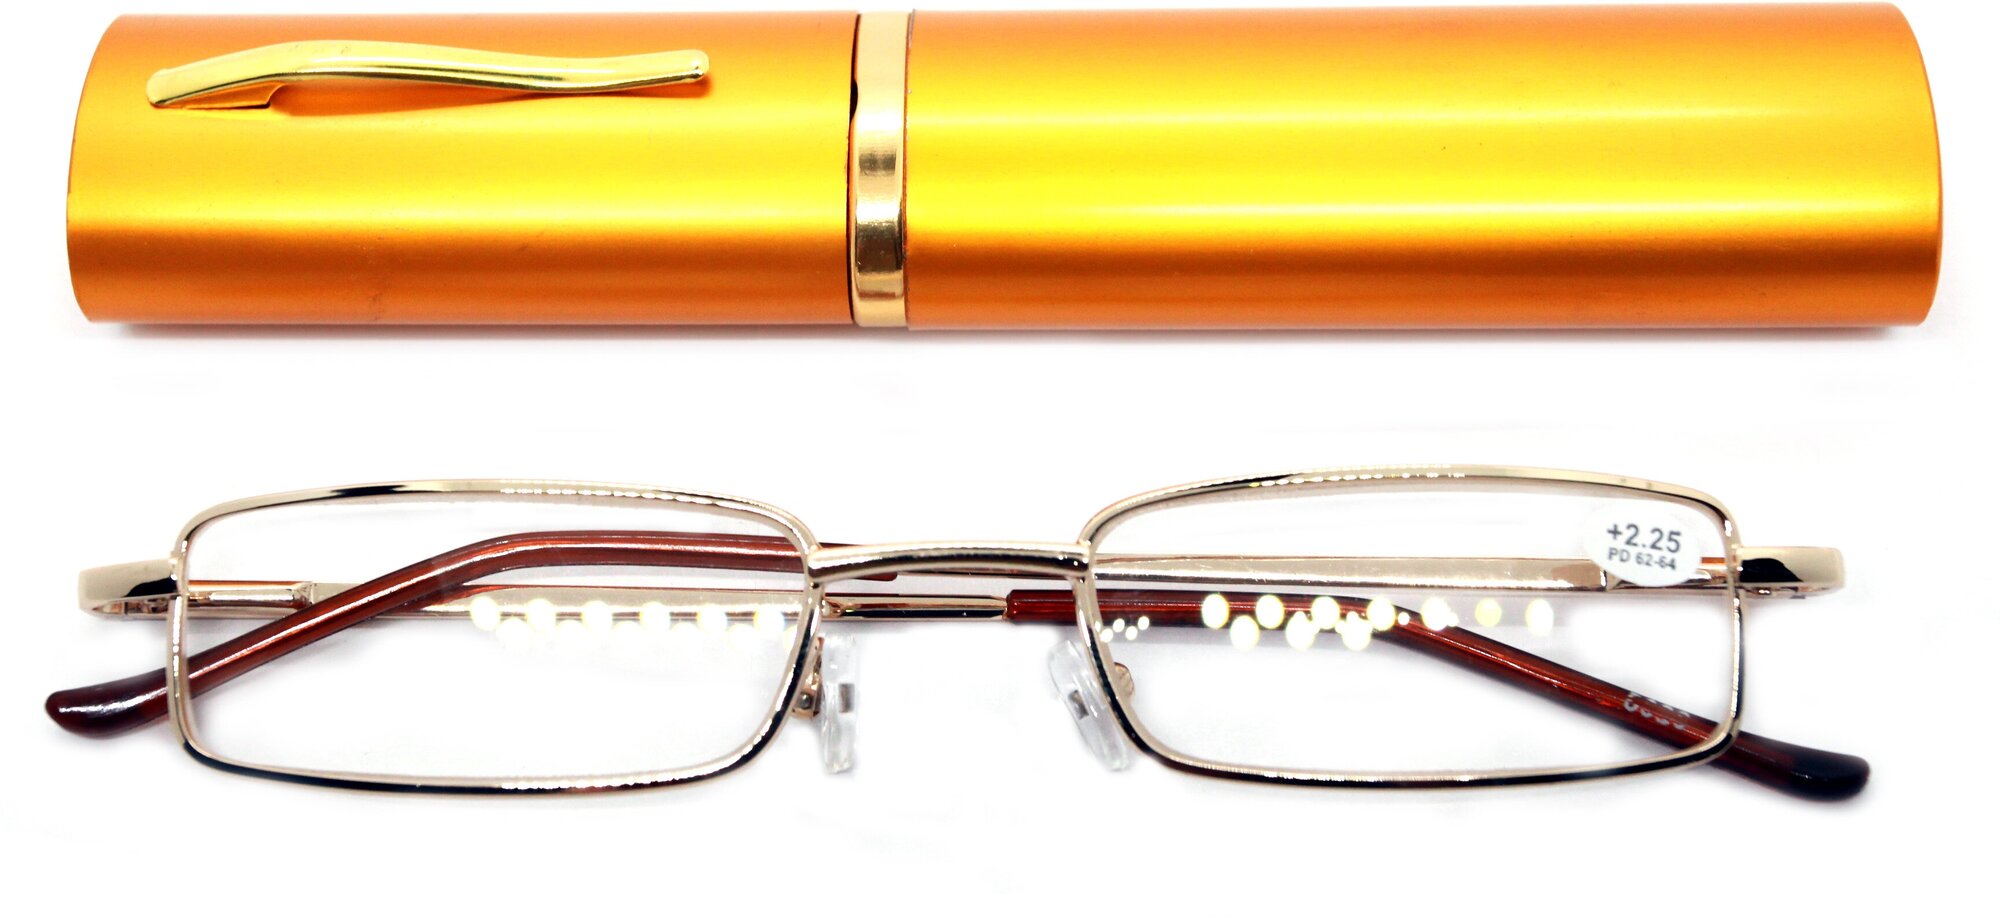 Готовые очки-ручка для чтения (+0.75) узкая, в футляре, цвет золото, РЦ 62-64